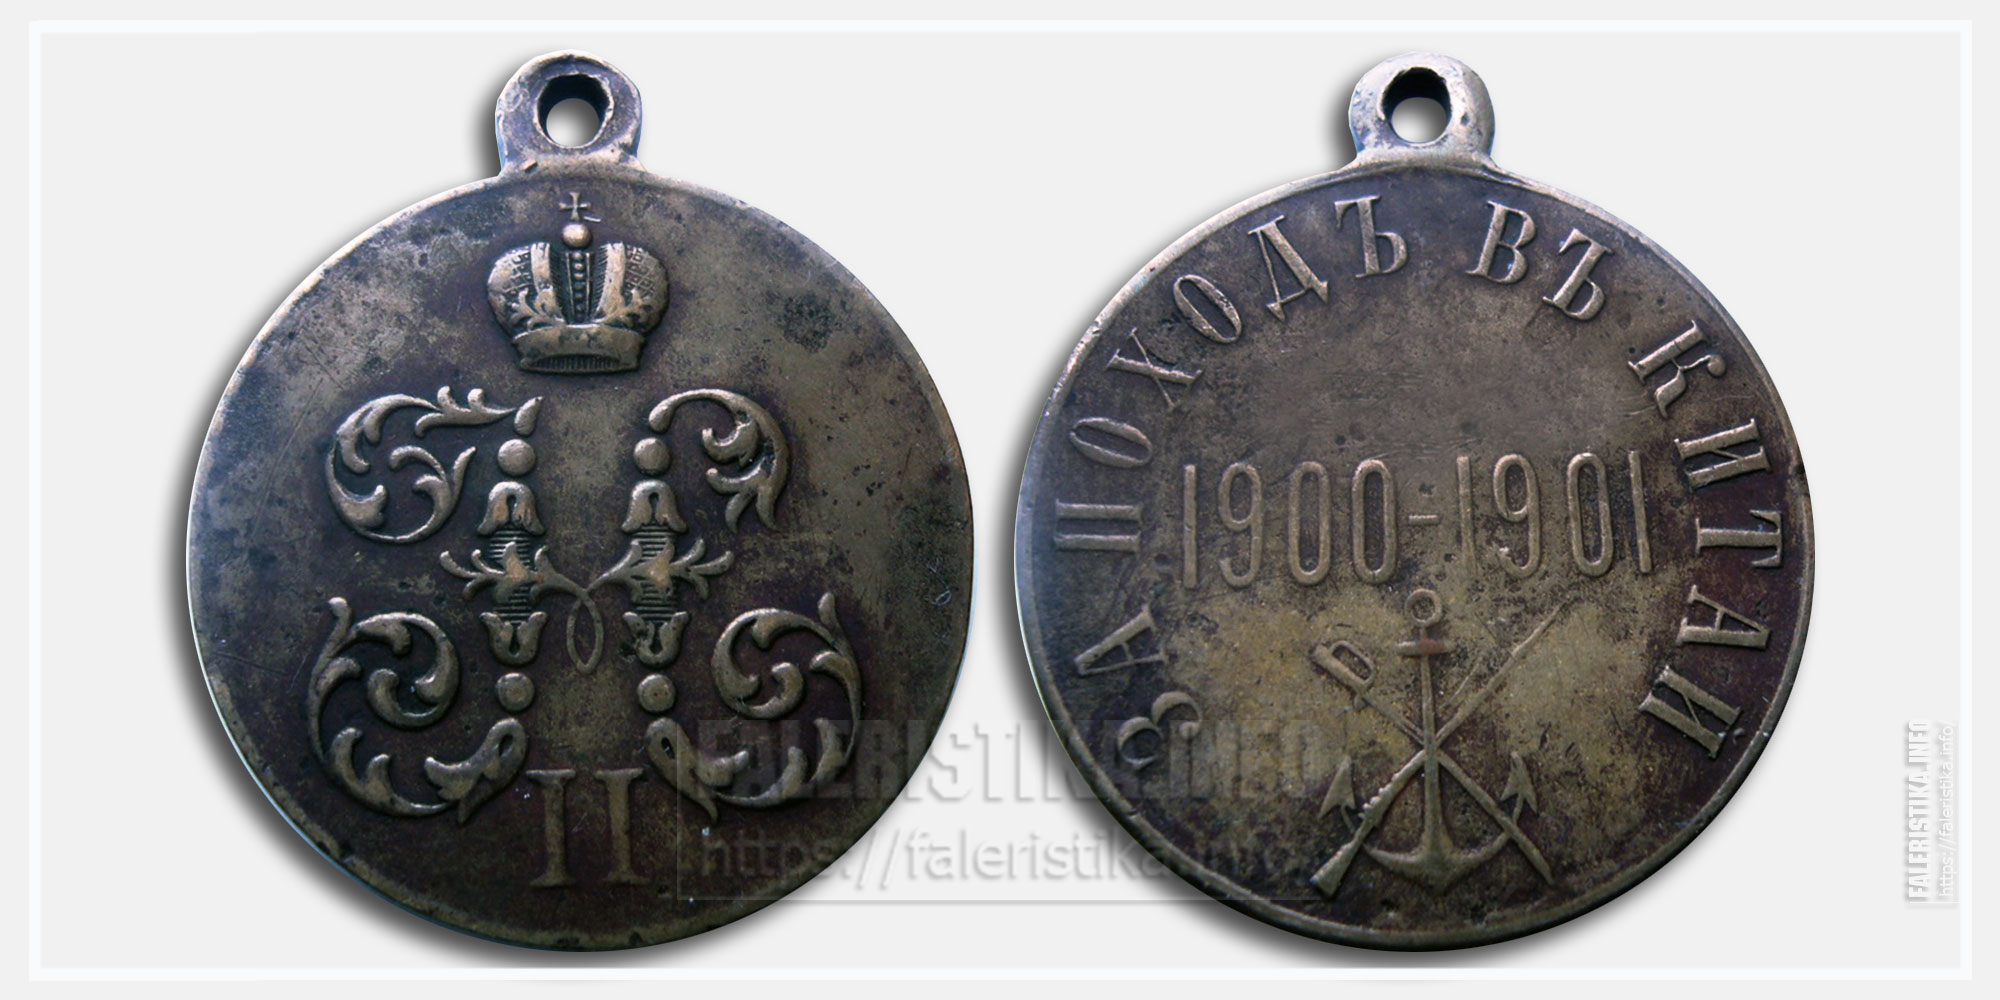 Медаль "За поход в Китай" 1900-1901